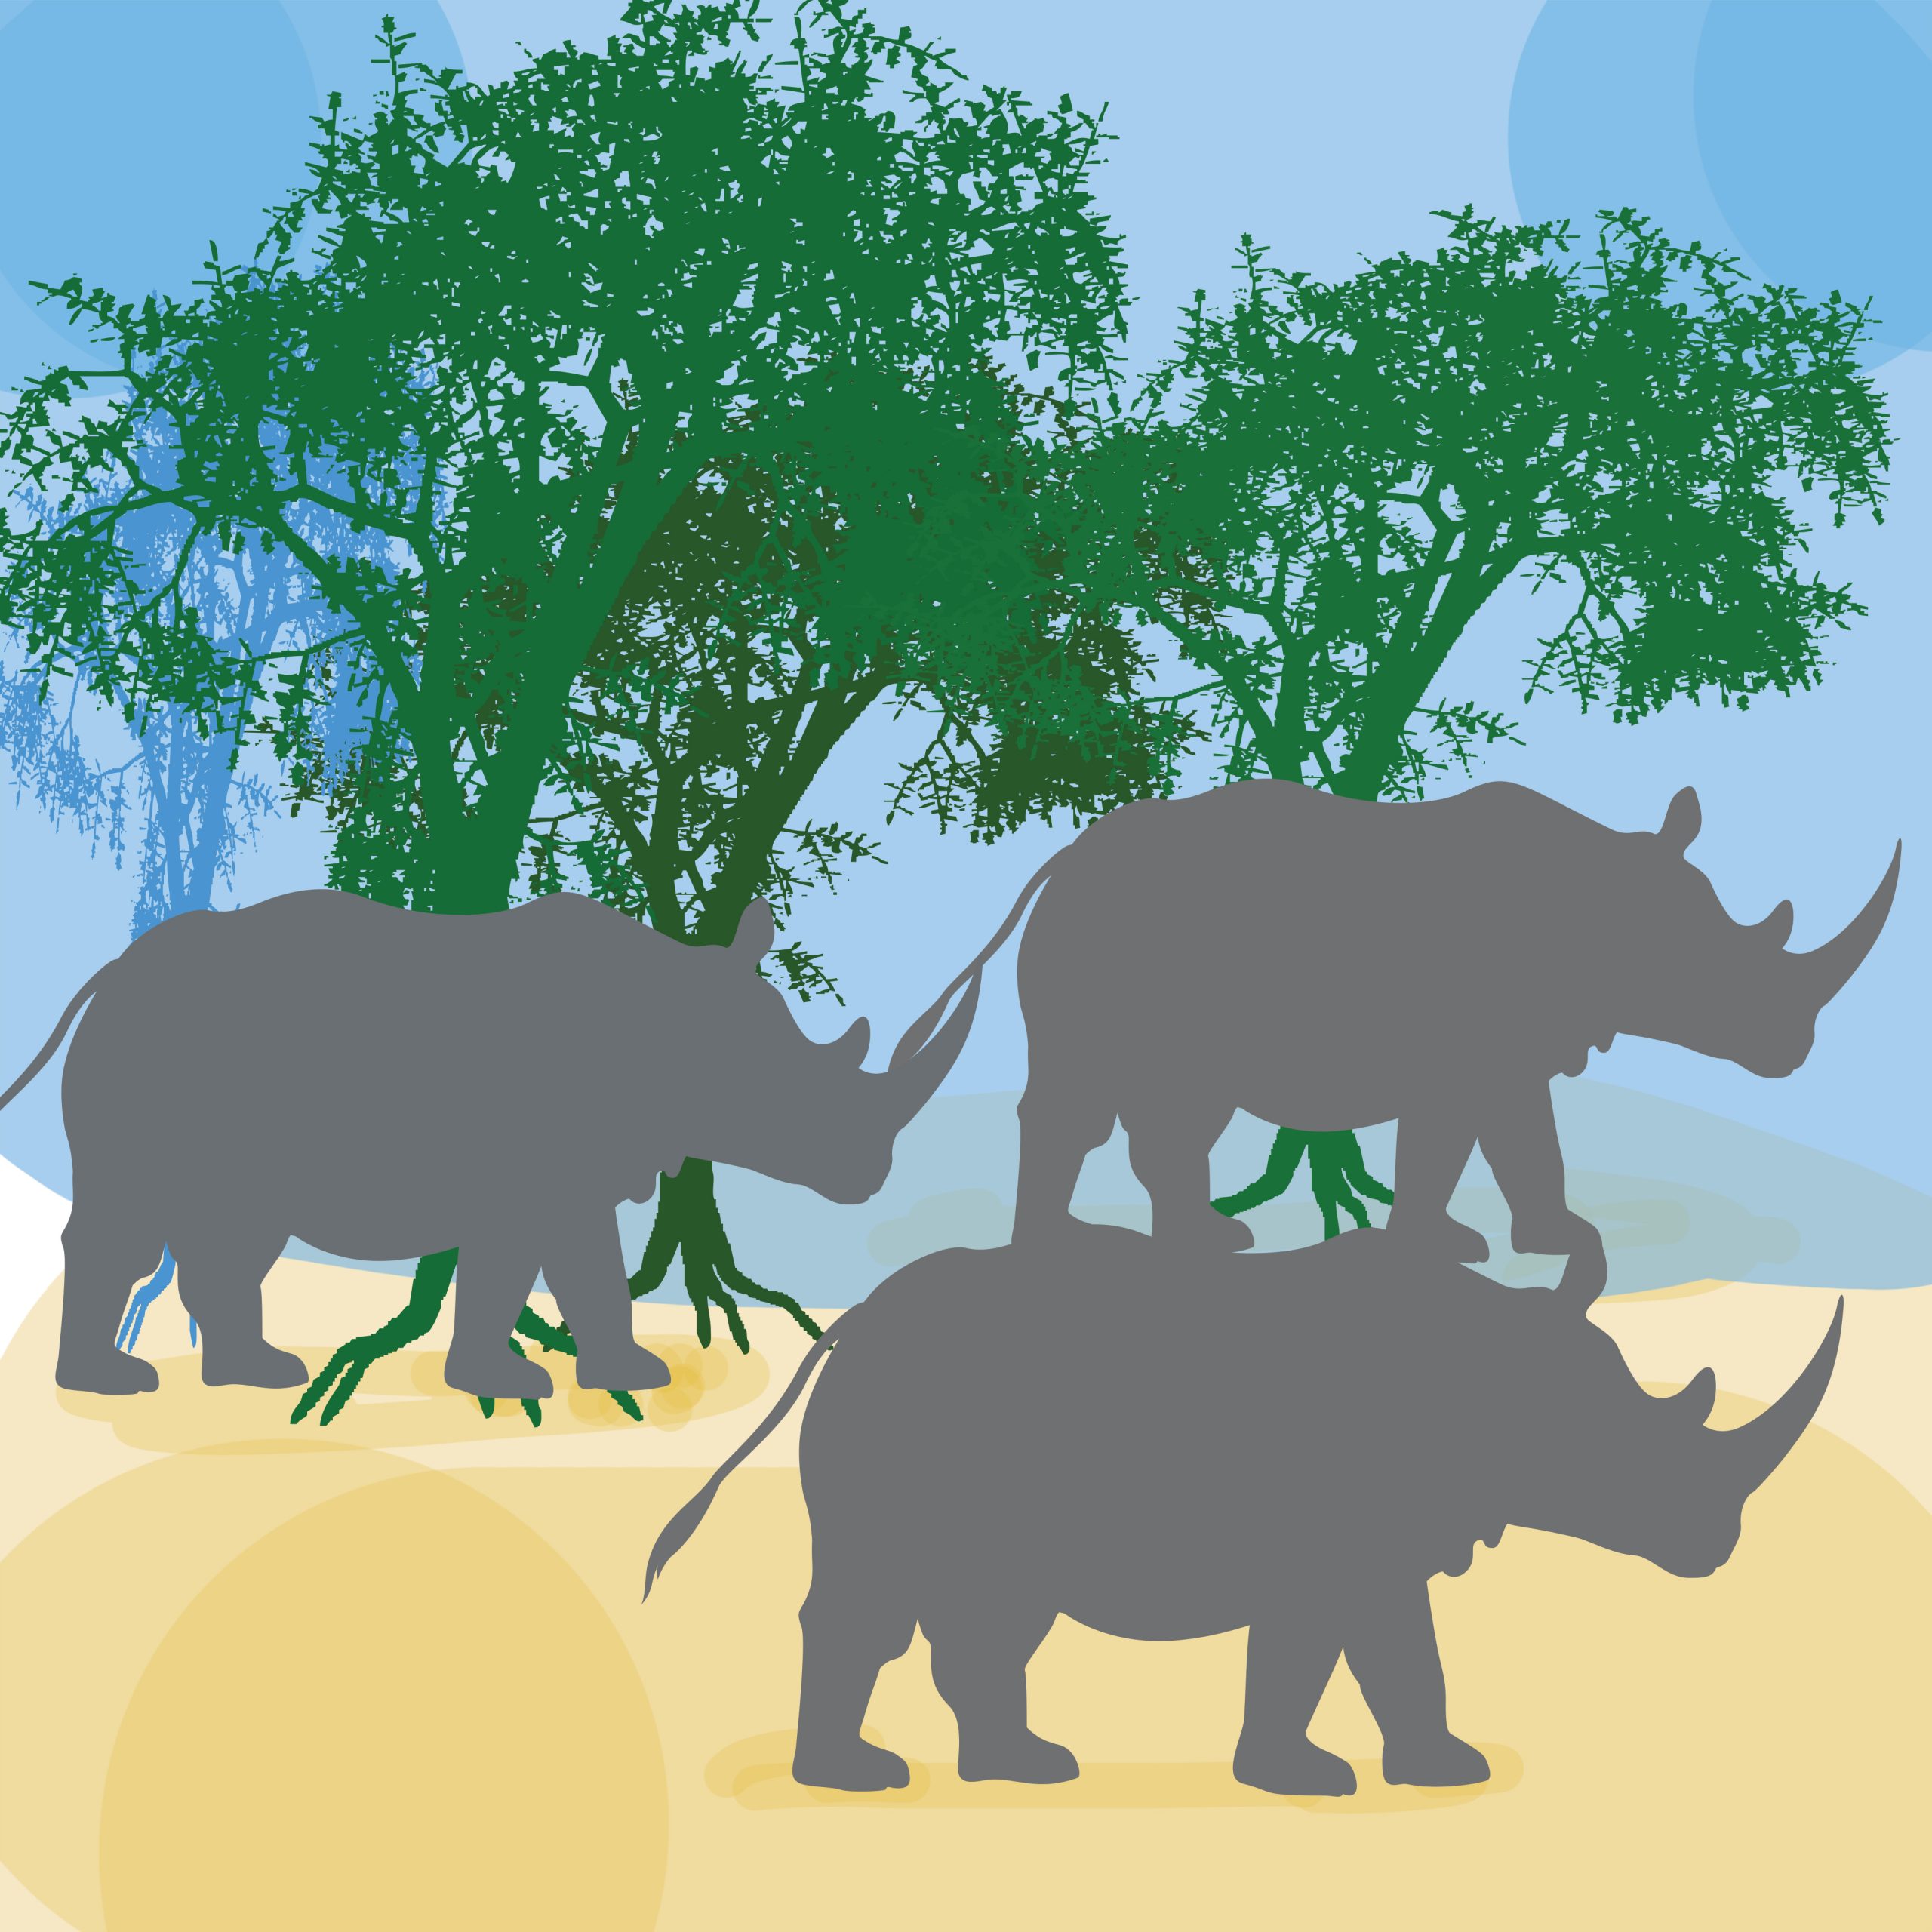 Rhino illustration